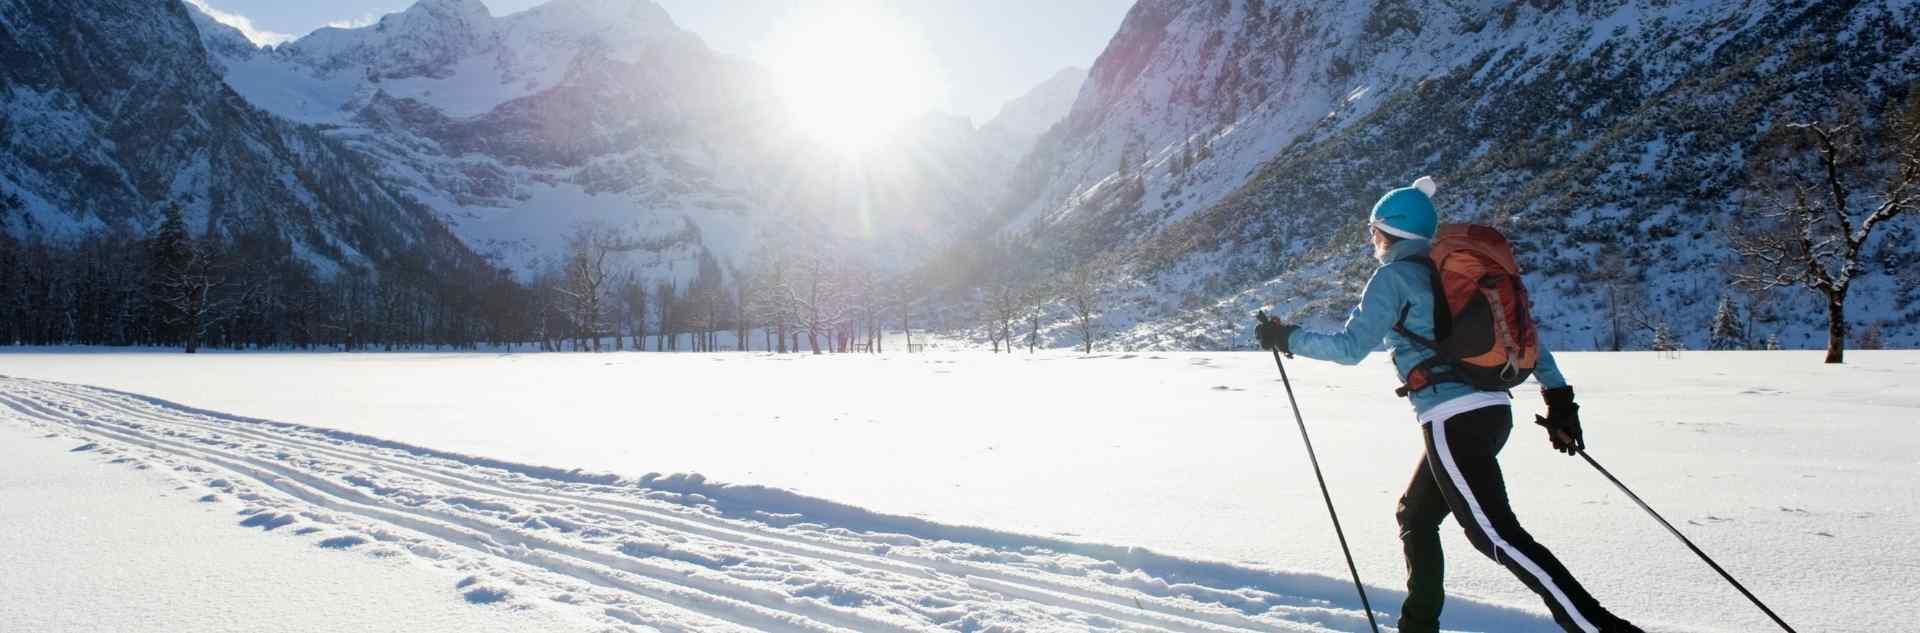 Sonnige Winterlandschaft im Skiurlaub